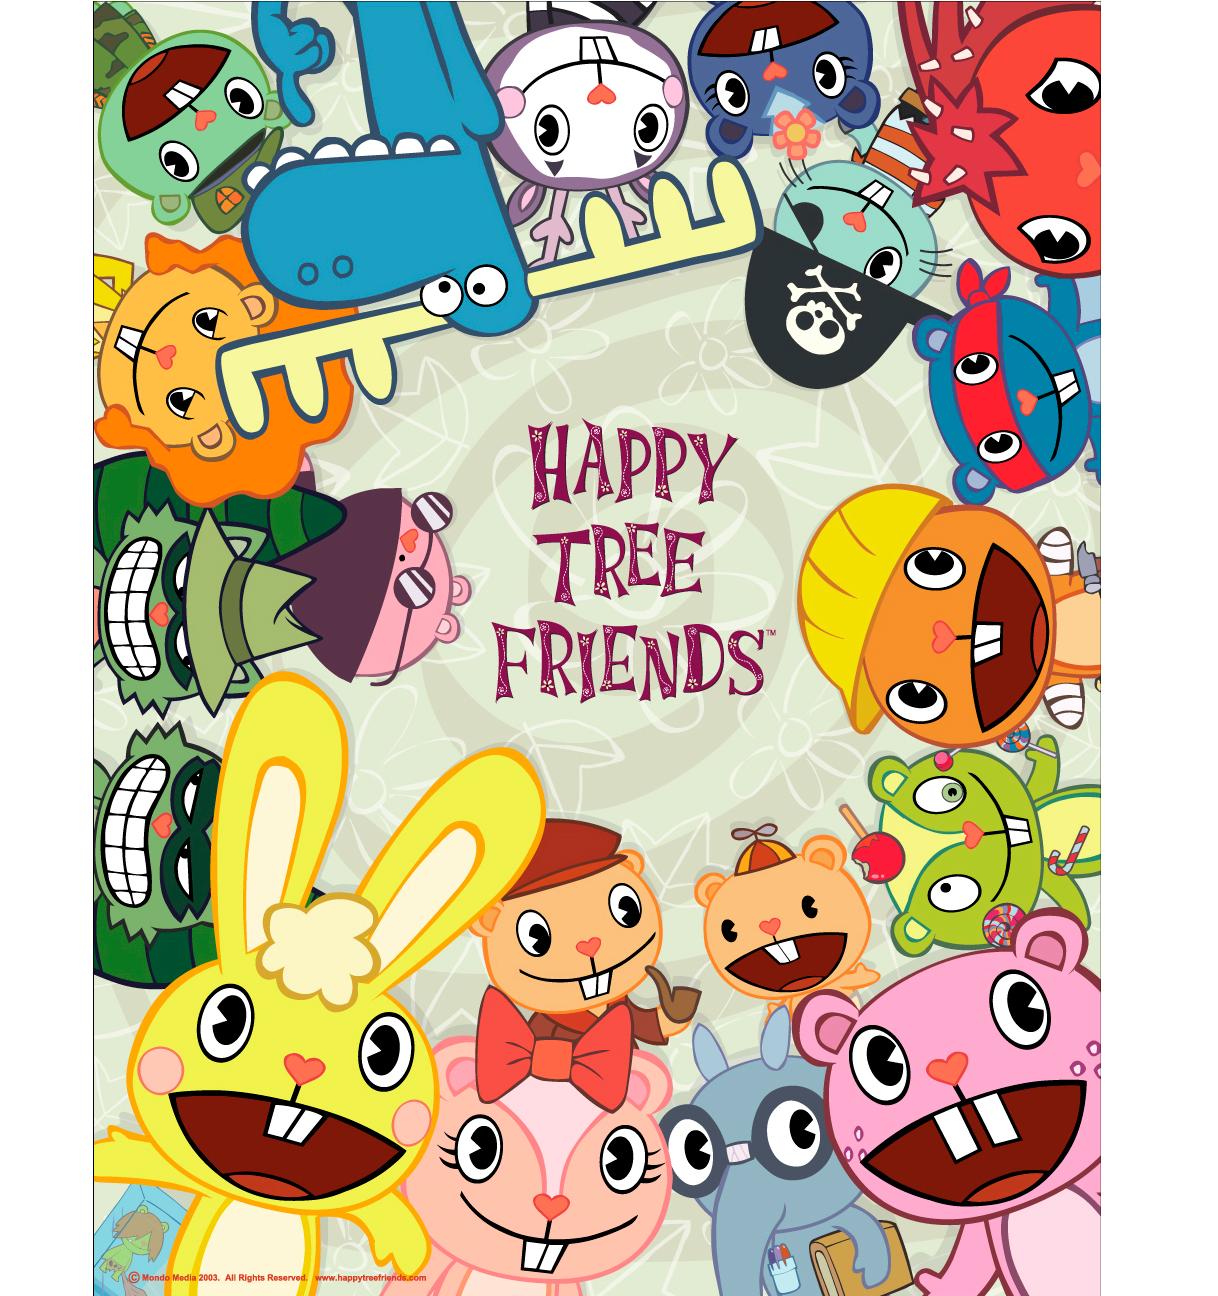 Happy Tree Friends wallpaper, Anime, HQ Happy Tree Friends pictureK Wallpaper 2019